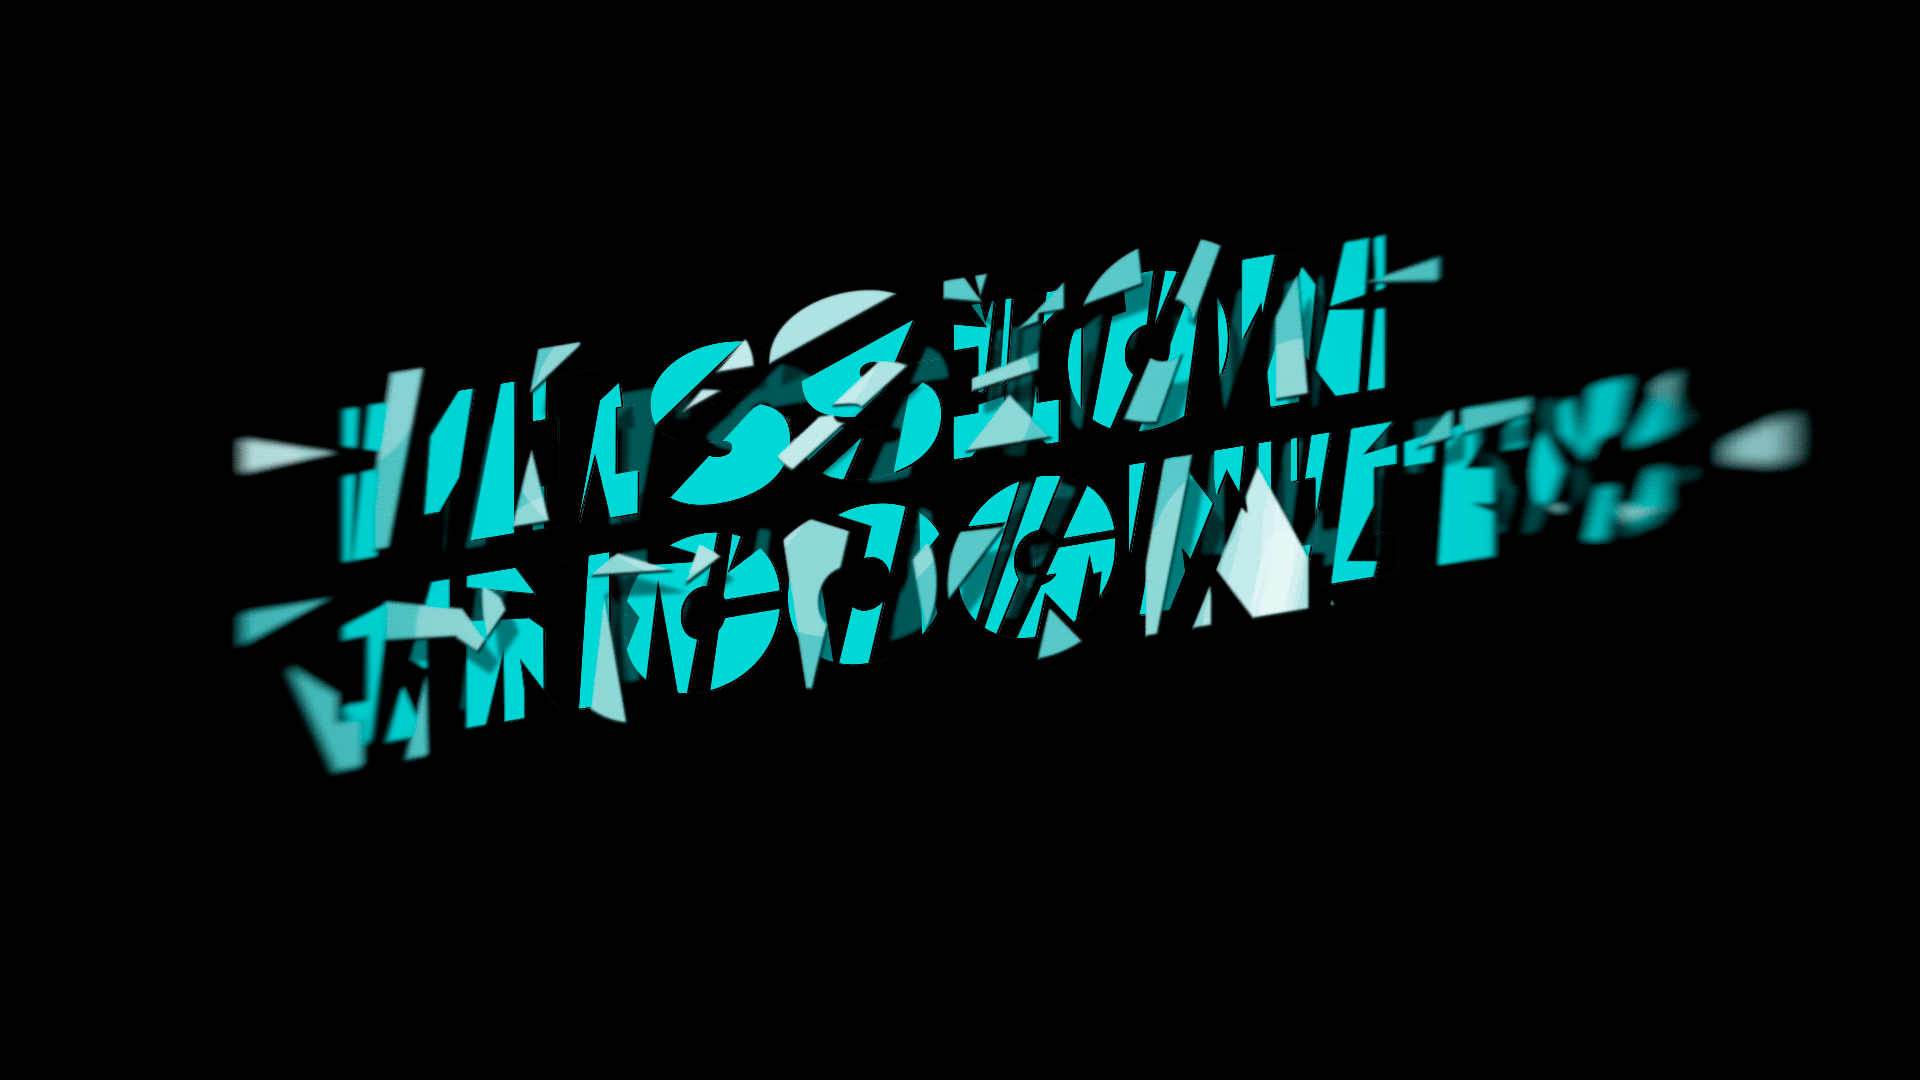 Cyberpunk gif logo фото 27